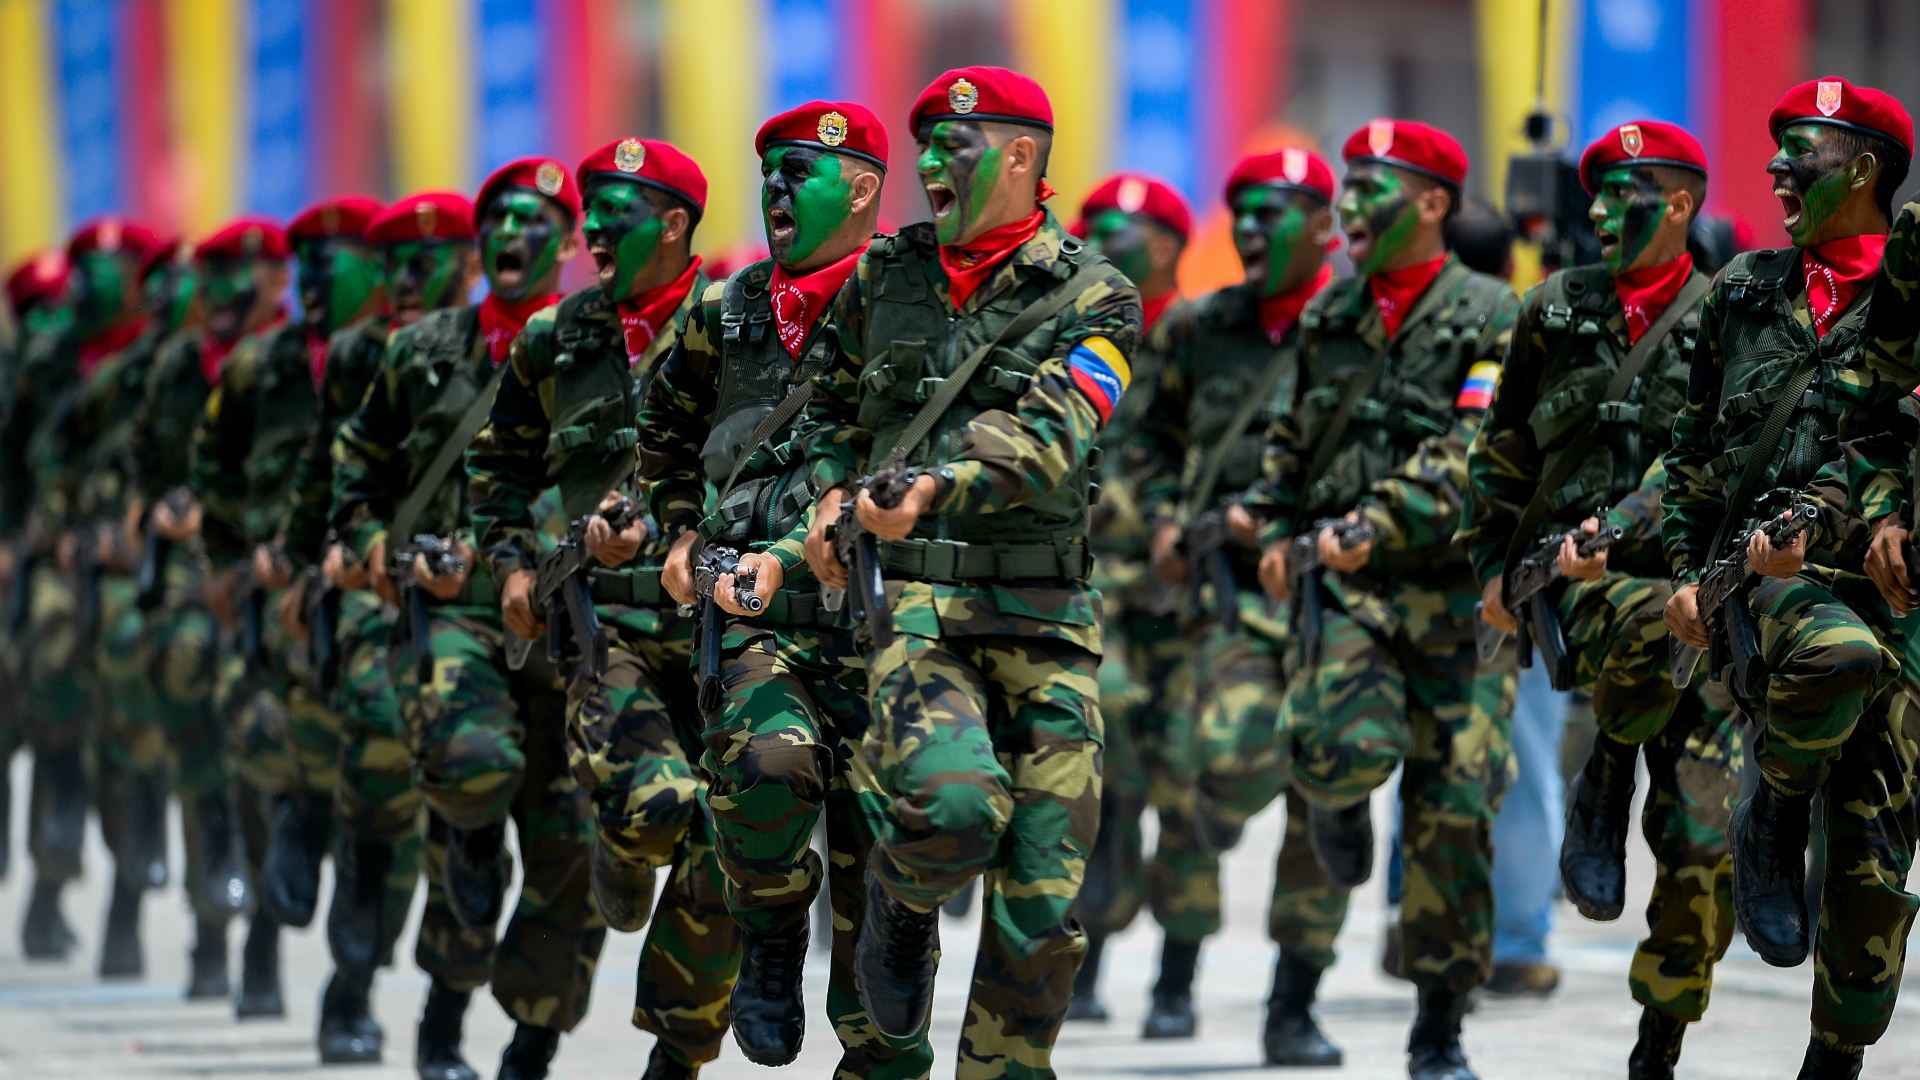 Σε «κόκκινο συναγερμό» έθεσε το Στρατό της Βενεζουέλας ο Μαδούρο μετά τις αναφορές για σχέδια αμερικανικής εισβολής